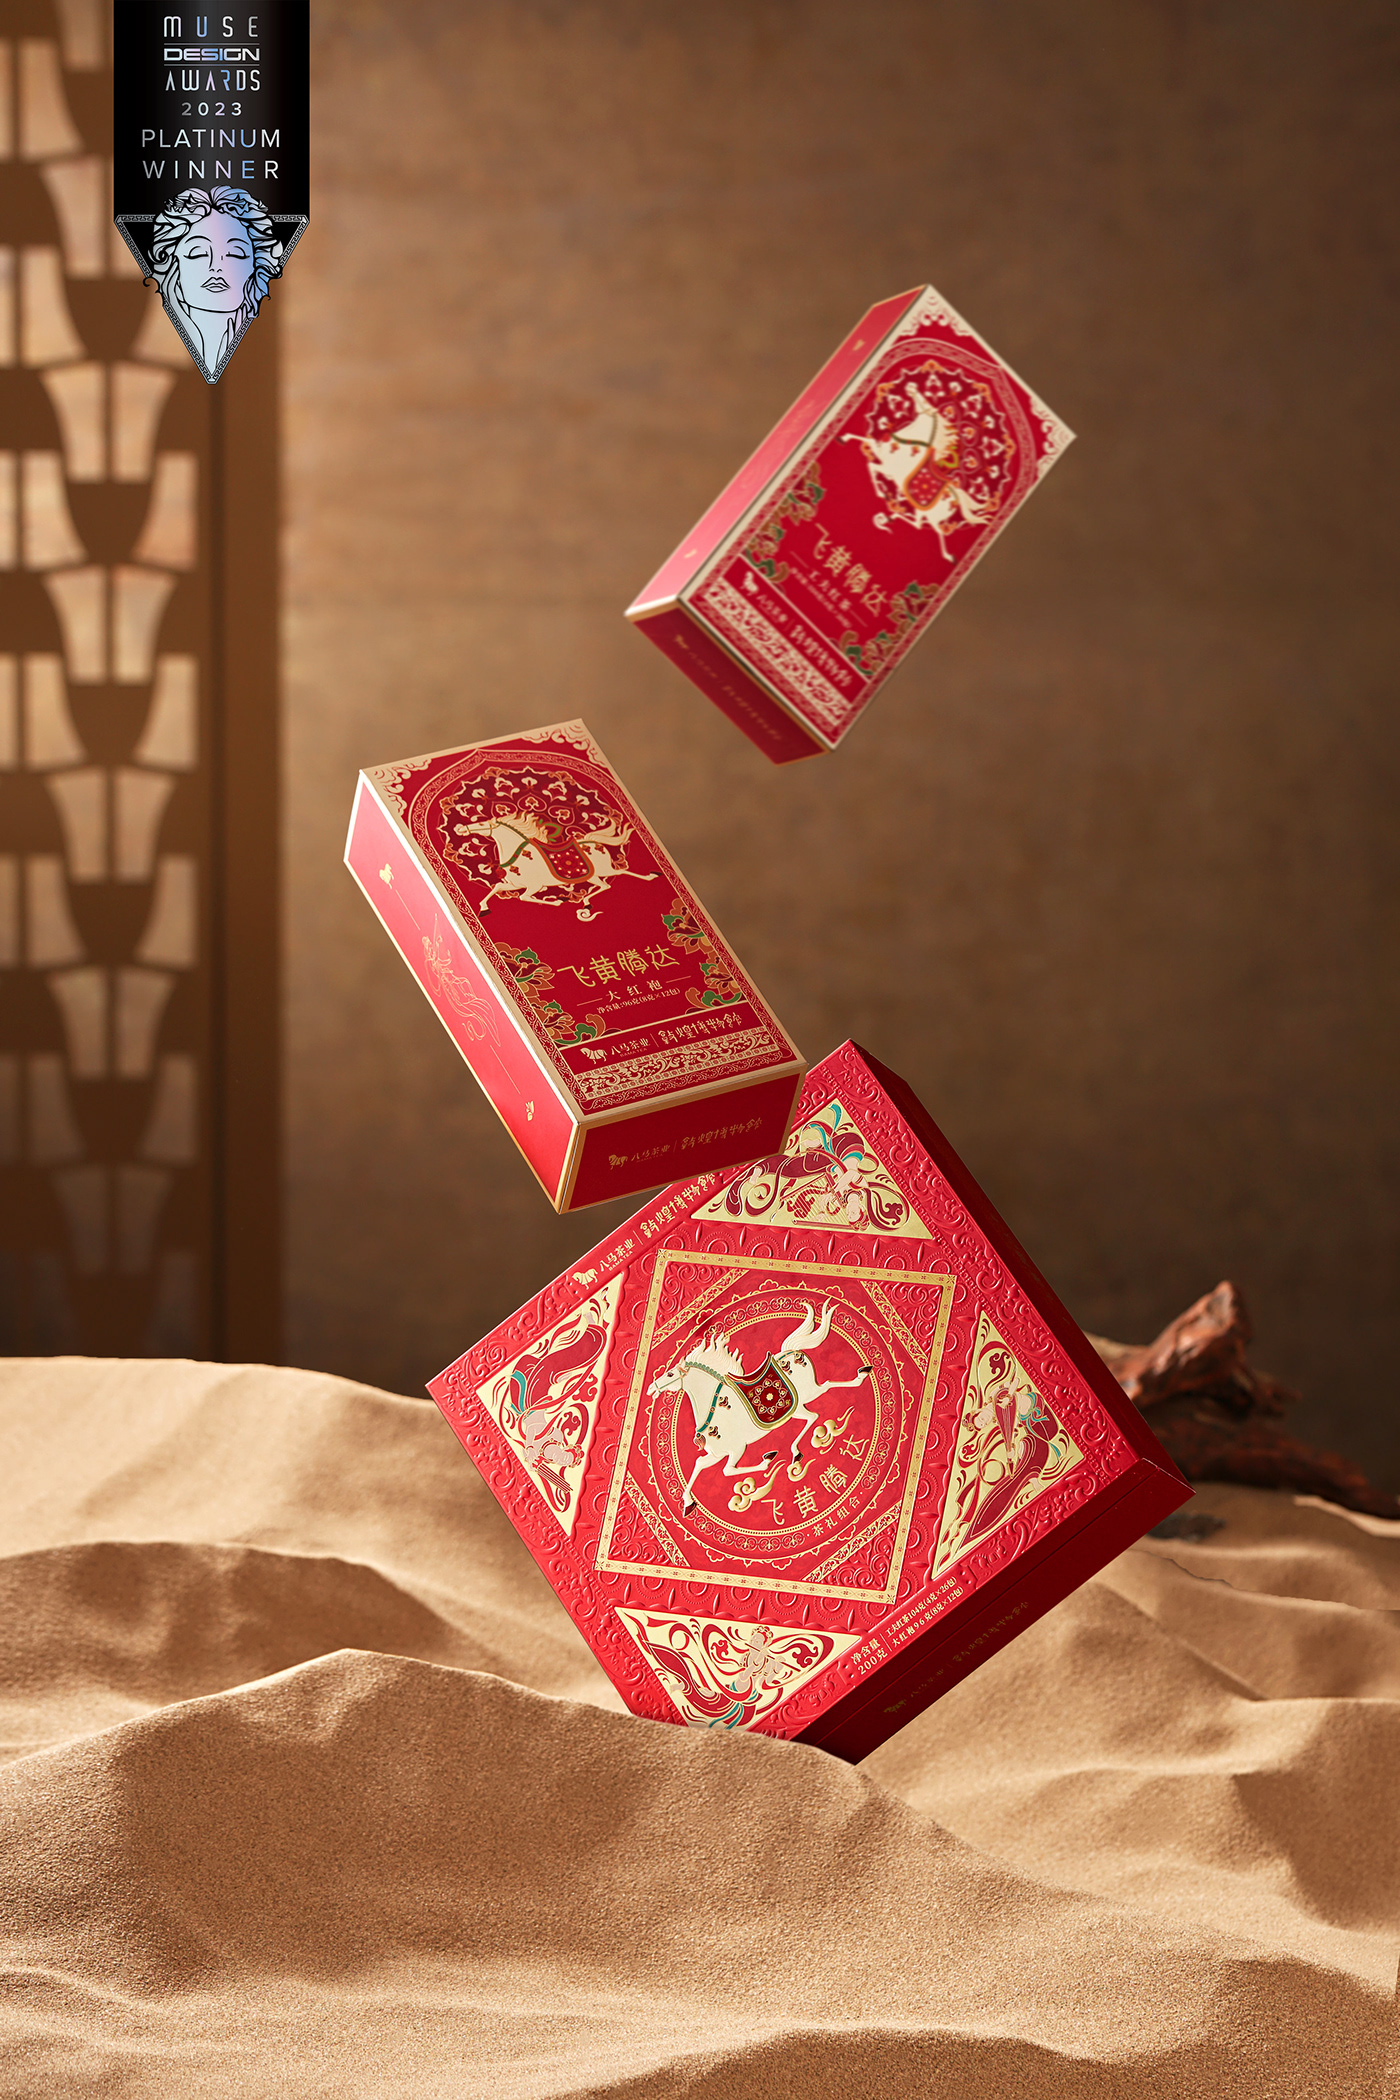 茶叶包装设计 茶叶包装 包装设计 敦煌   敦煌博物馆 中国文化 敦煌飞天 美国缪斯设计奖